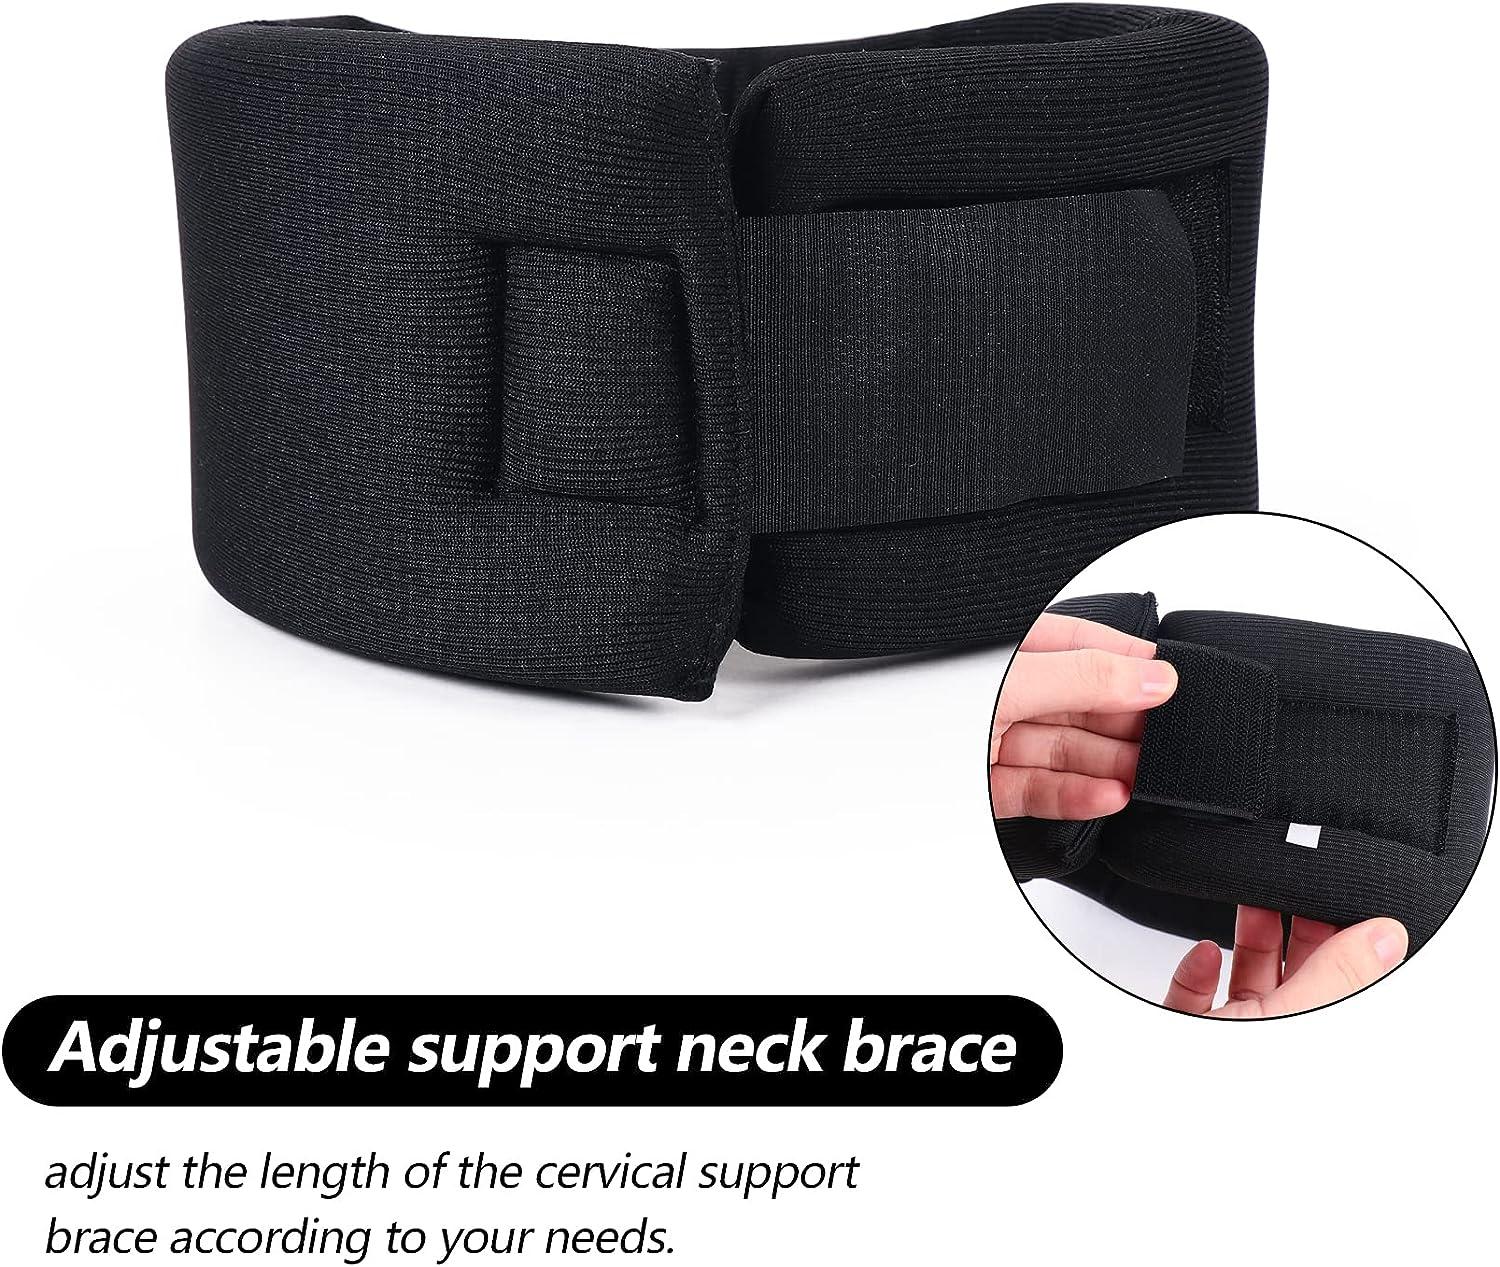 Soft Foam Neck Brace Universal Cervical Collar, Adjustable Neck